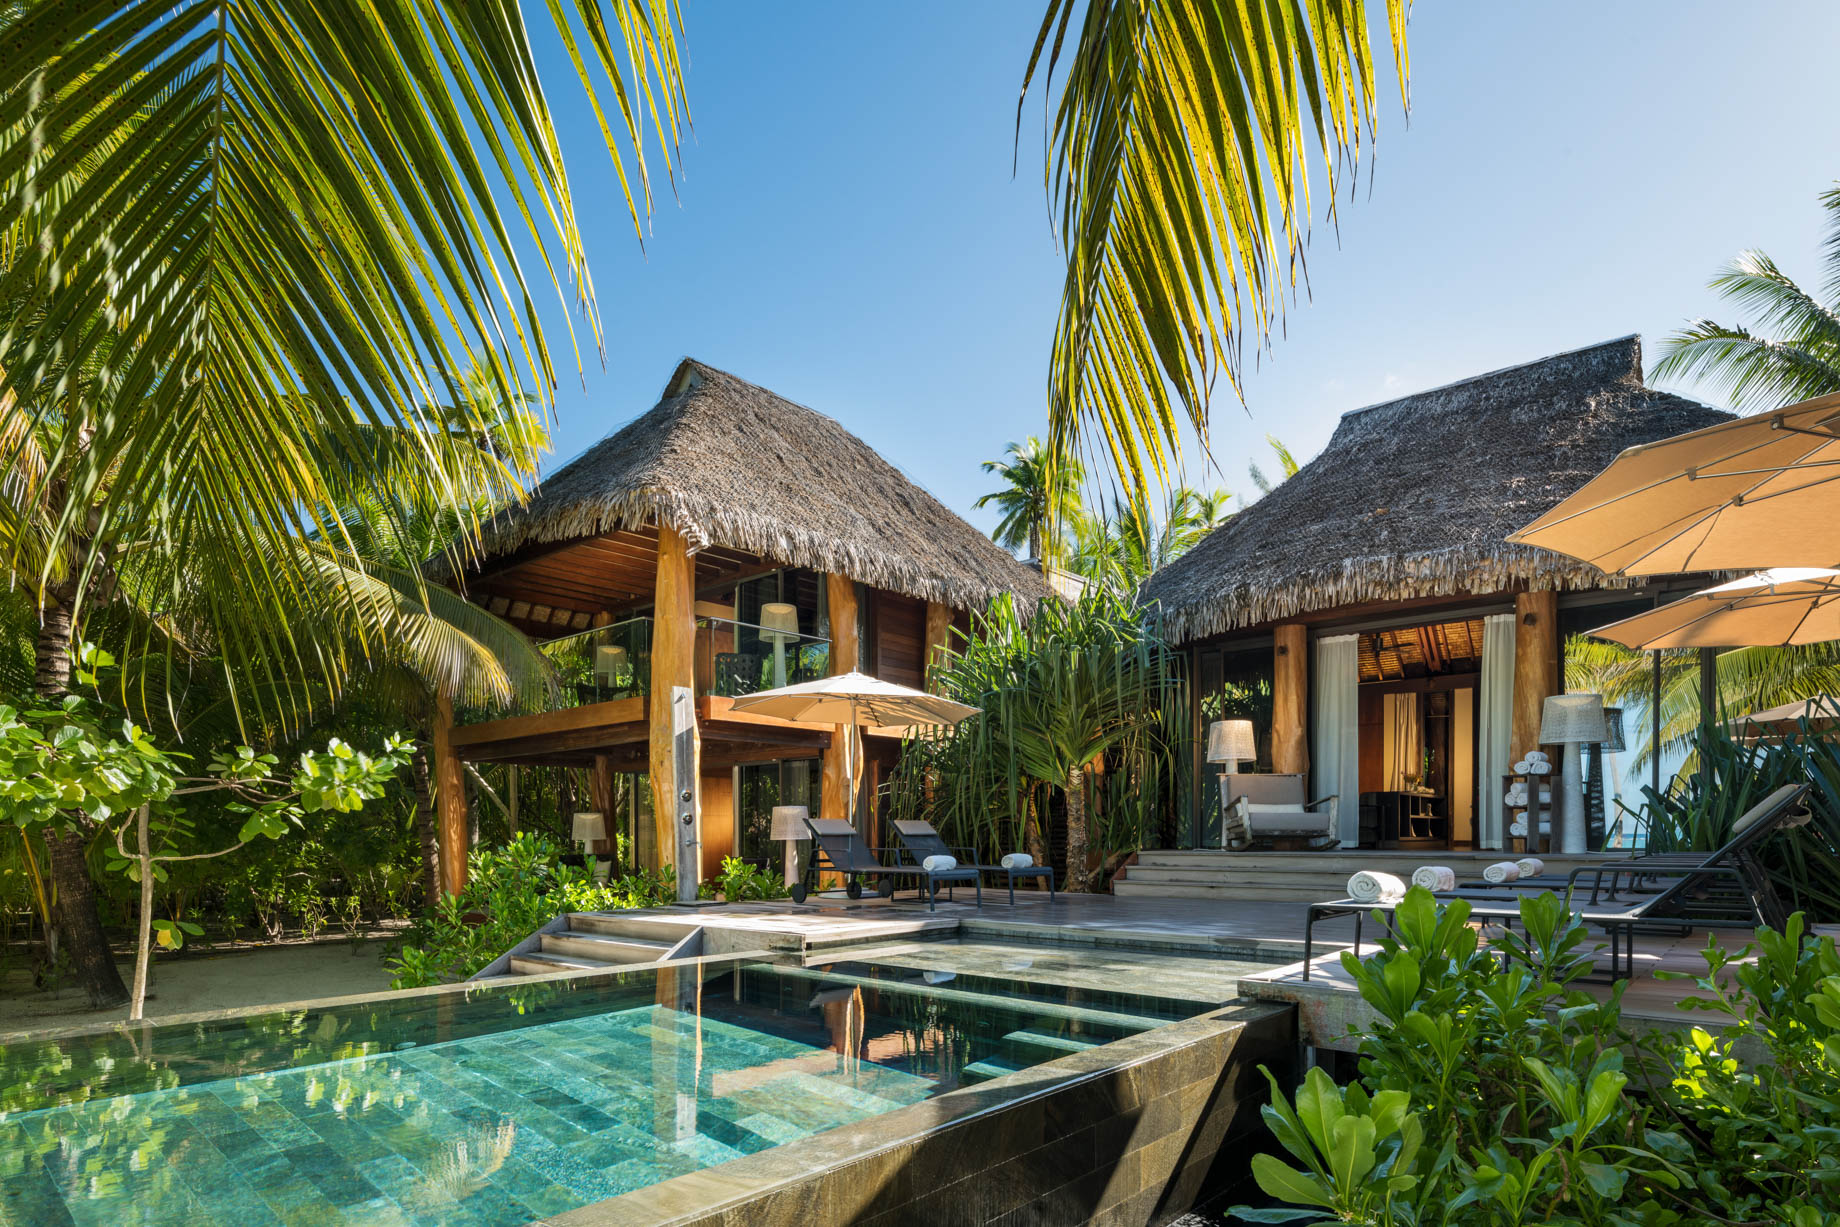 The Brando Resort - Tetiaroa Private Island, French Polynesia - 3 Bedroom Beachfront Villa Pool Deck